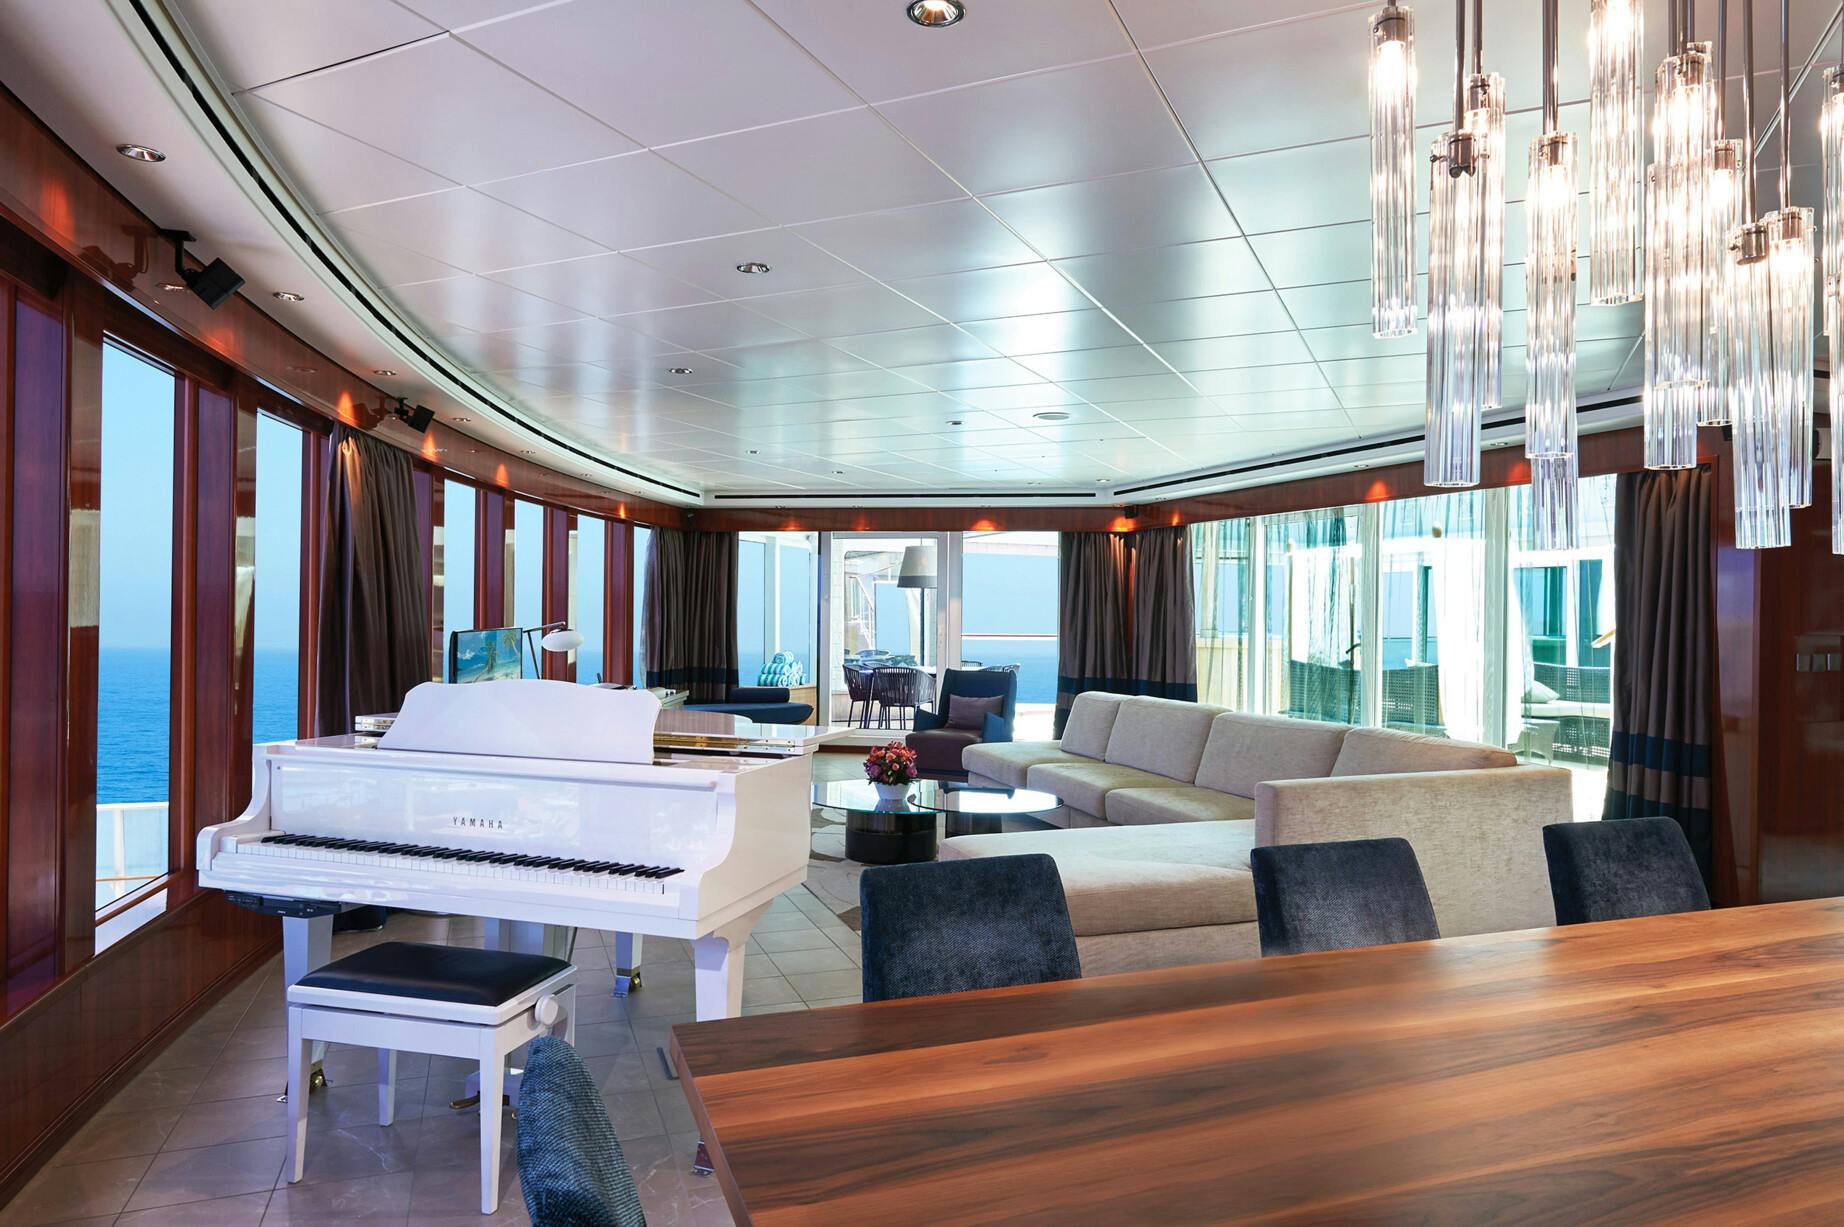 Norwegian Gem - Norwegian Cruise Line - The Haven